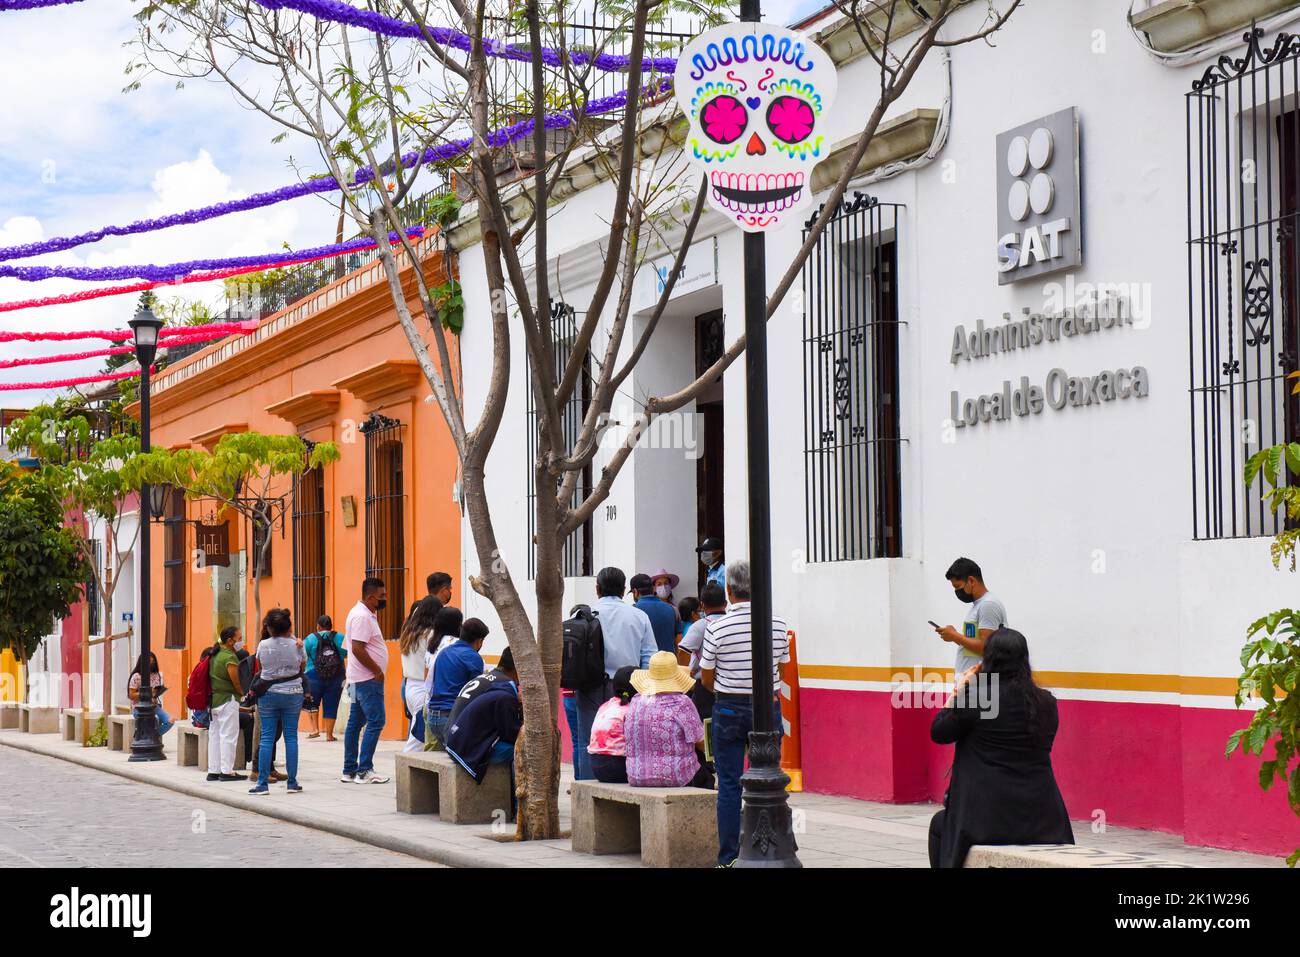 Personas frente a las oficinas de la administración local, Oaxaca de Juárez, México Foto de stock